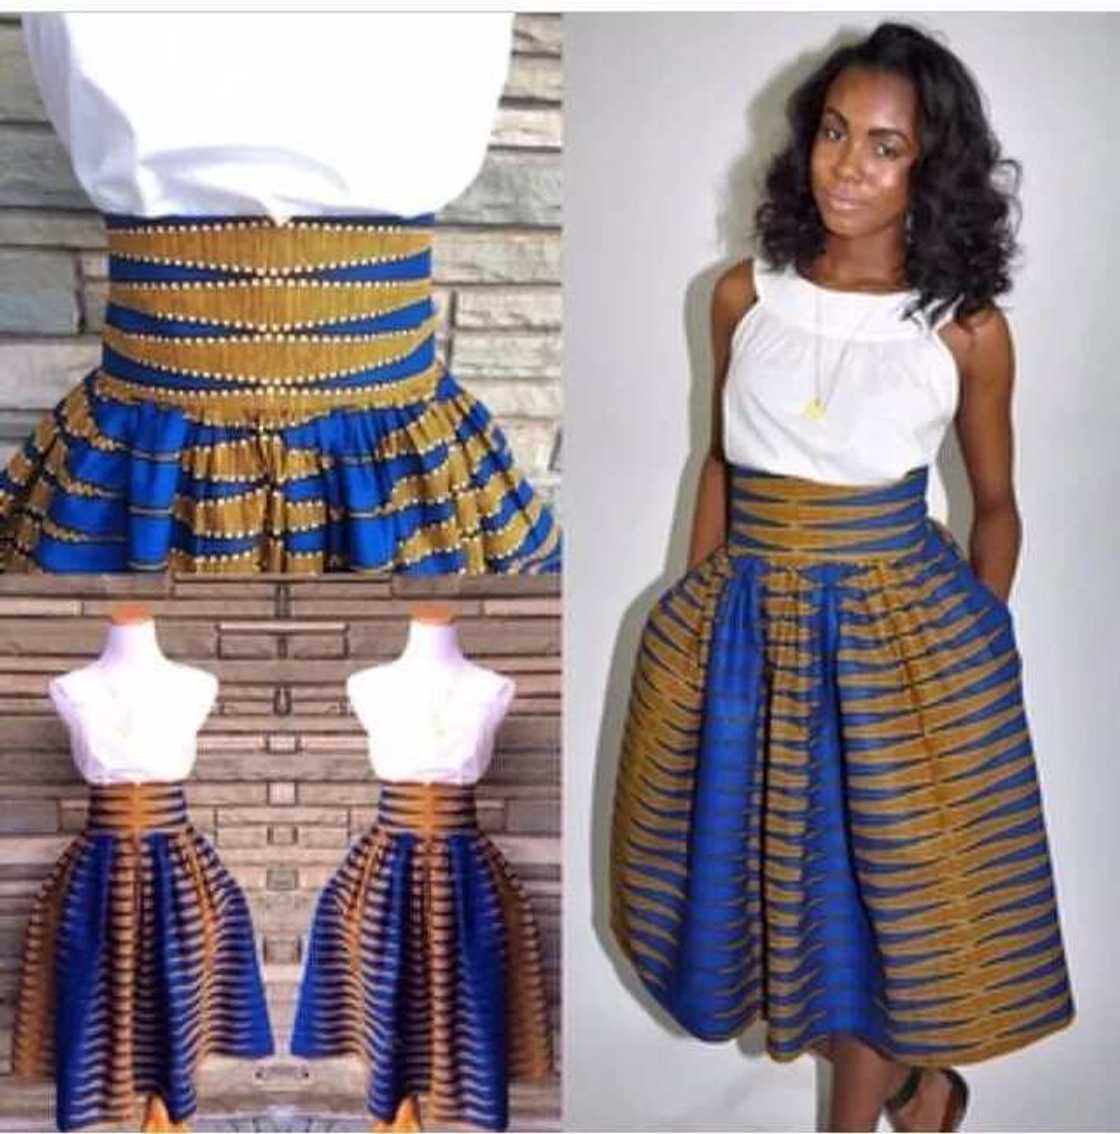 Ankara skirt